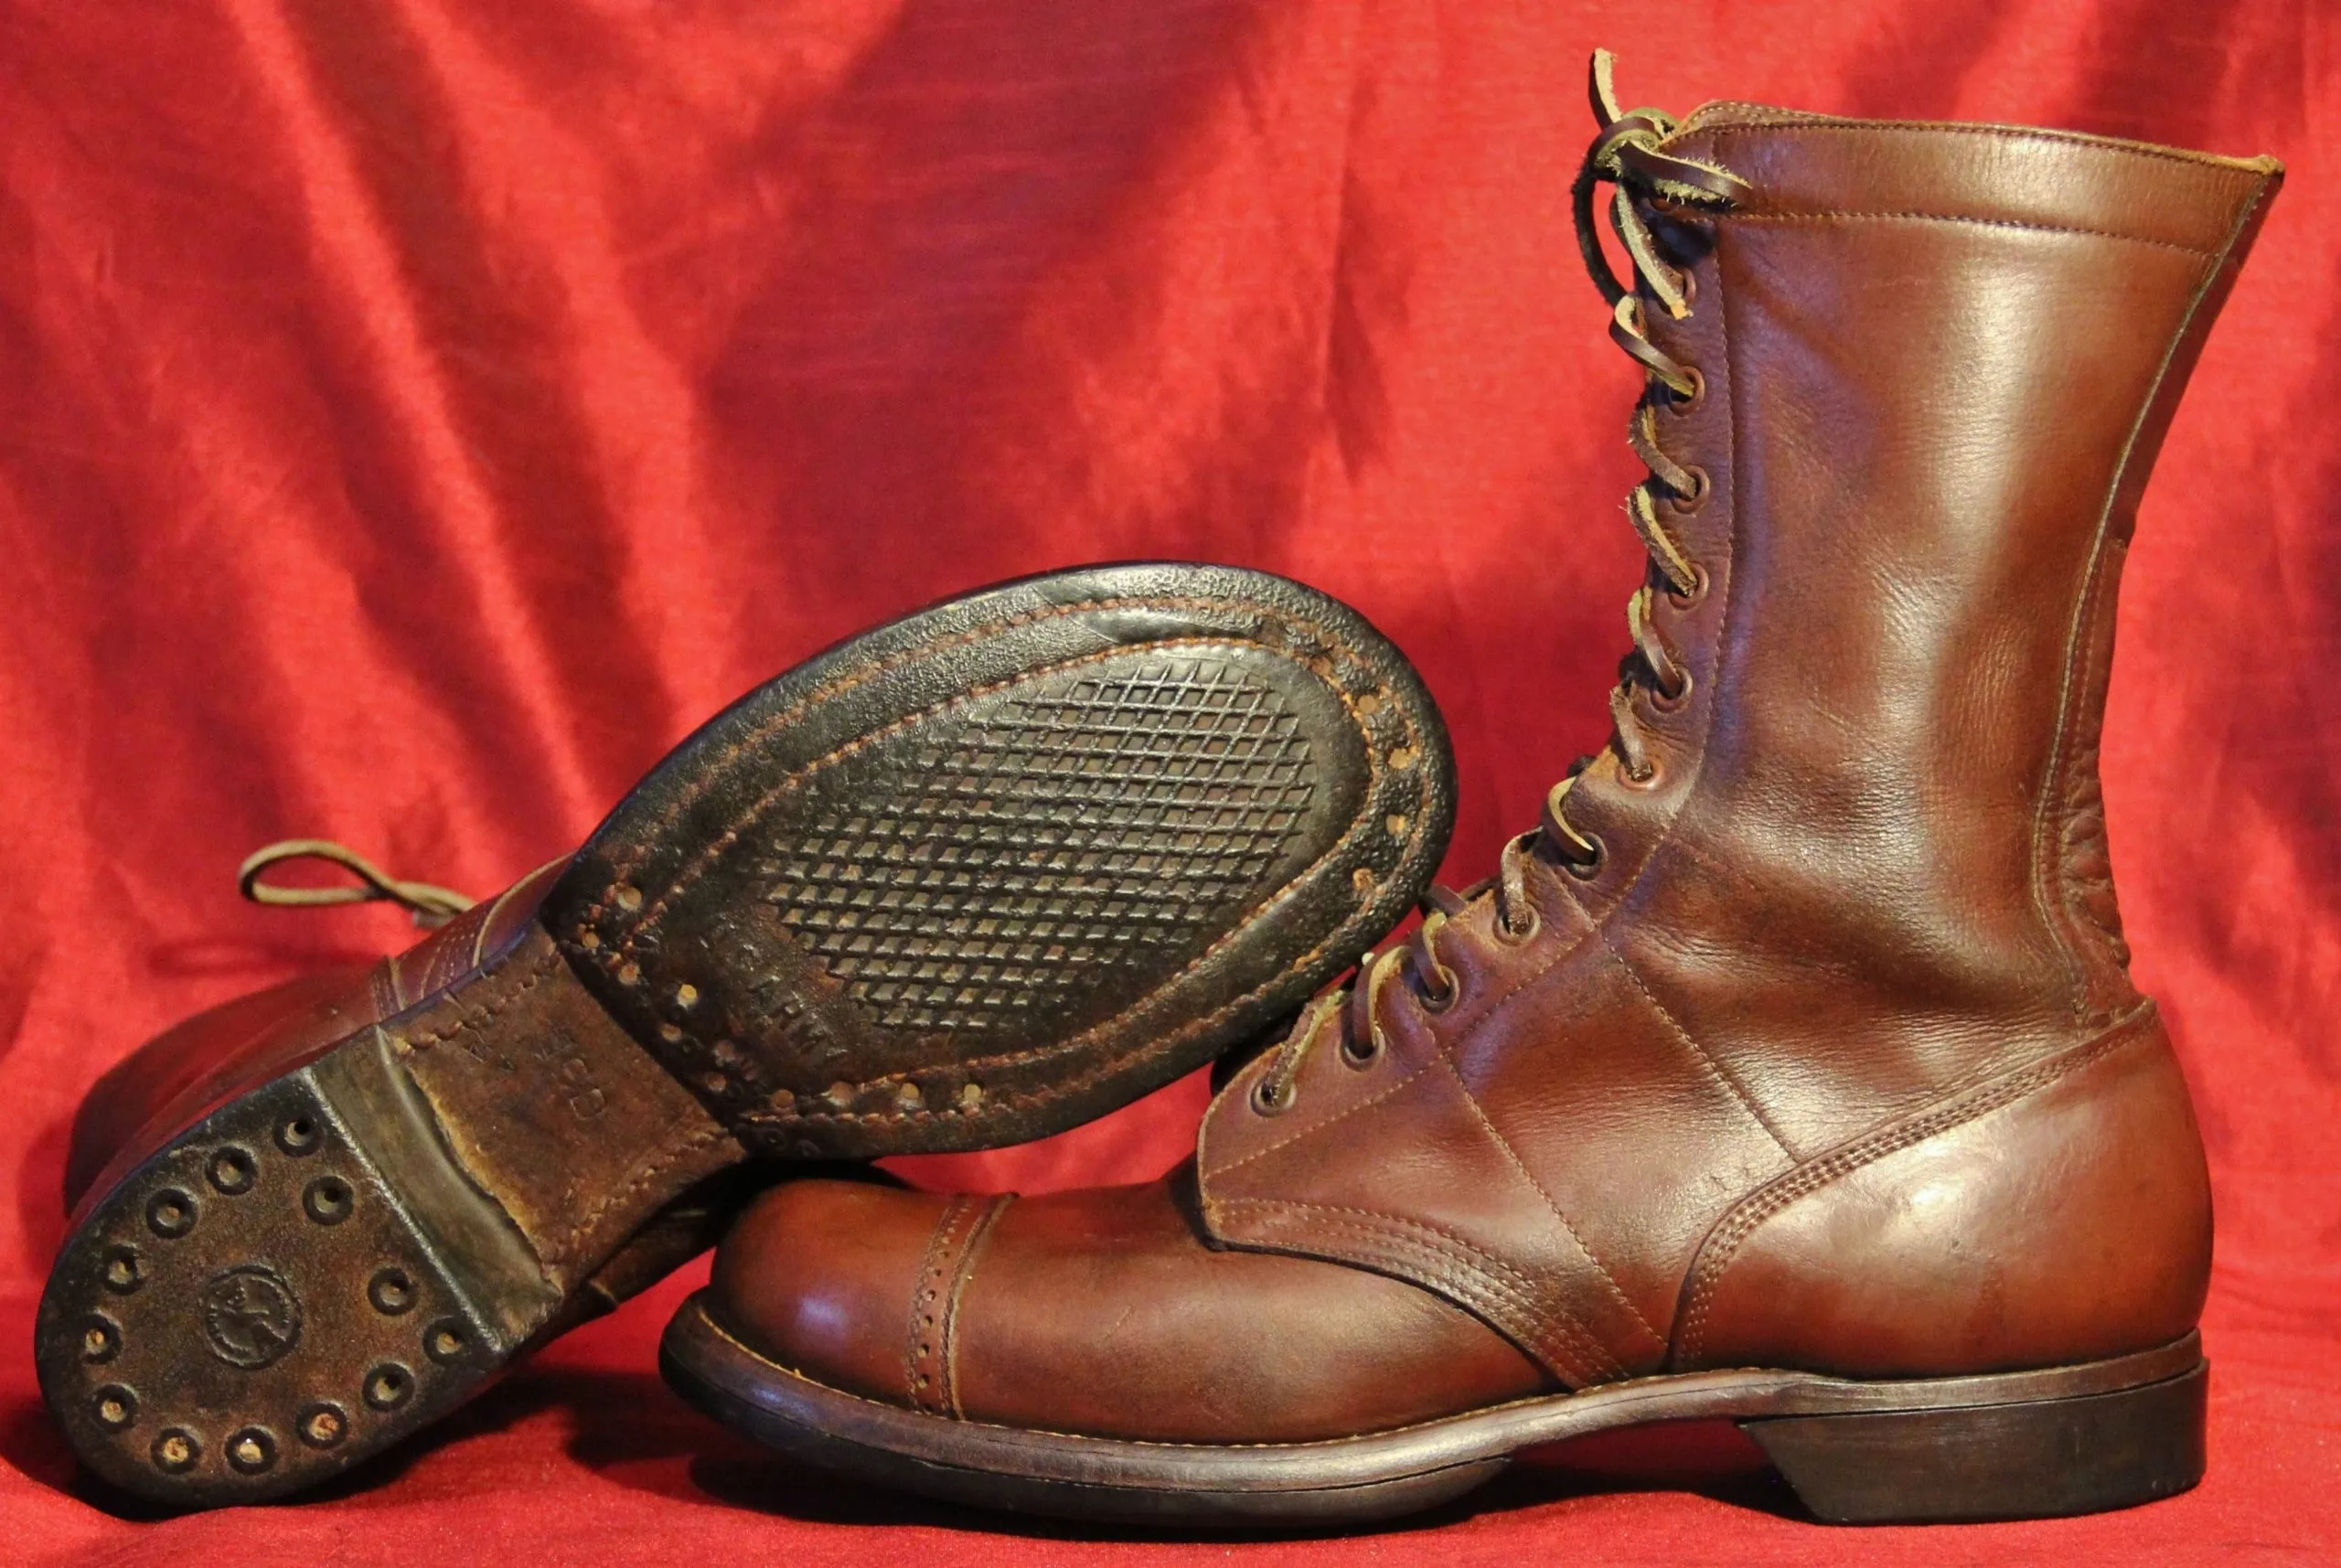 Beragam Sepatu yang Dipakai Prajurit Saat Perang Dunia II!